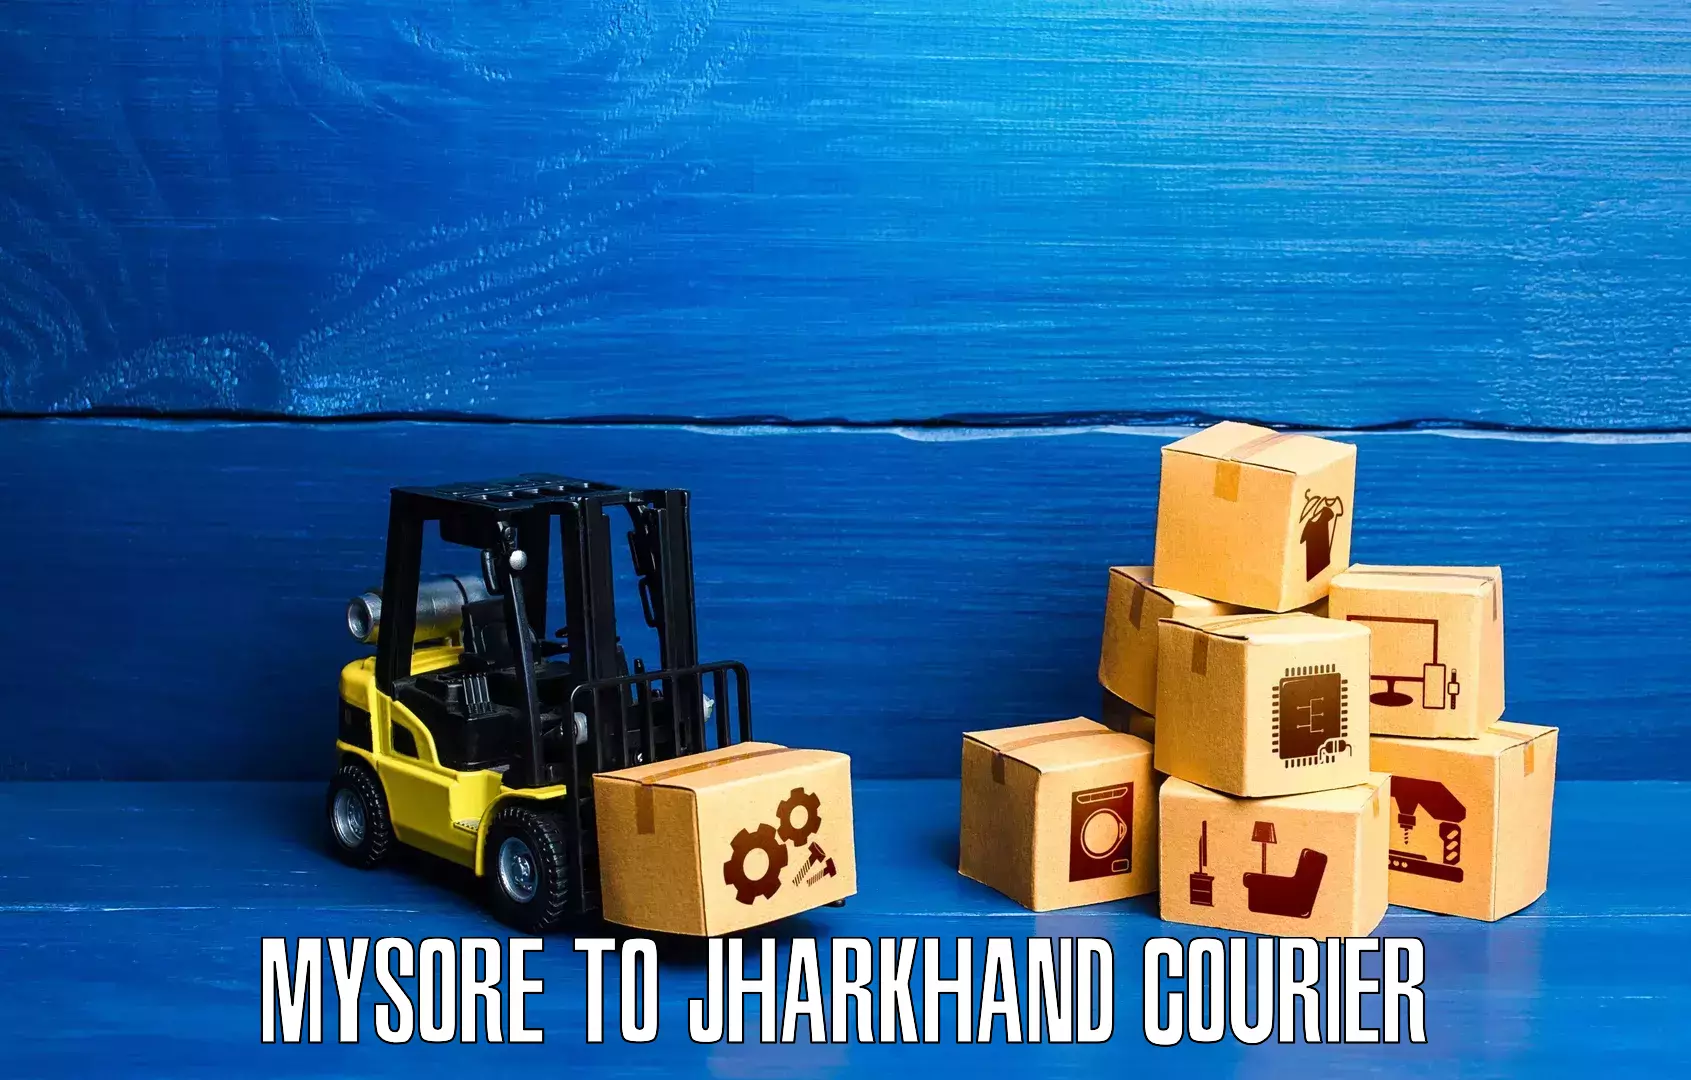 User-friendly courier app Mysore to Manoharpur